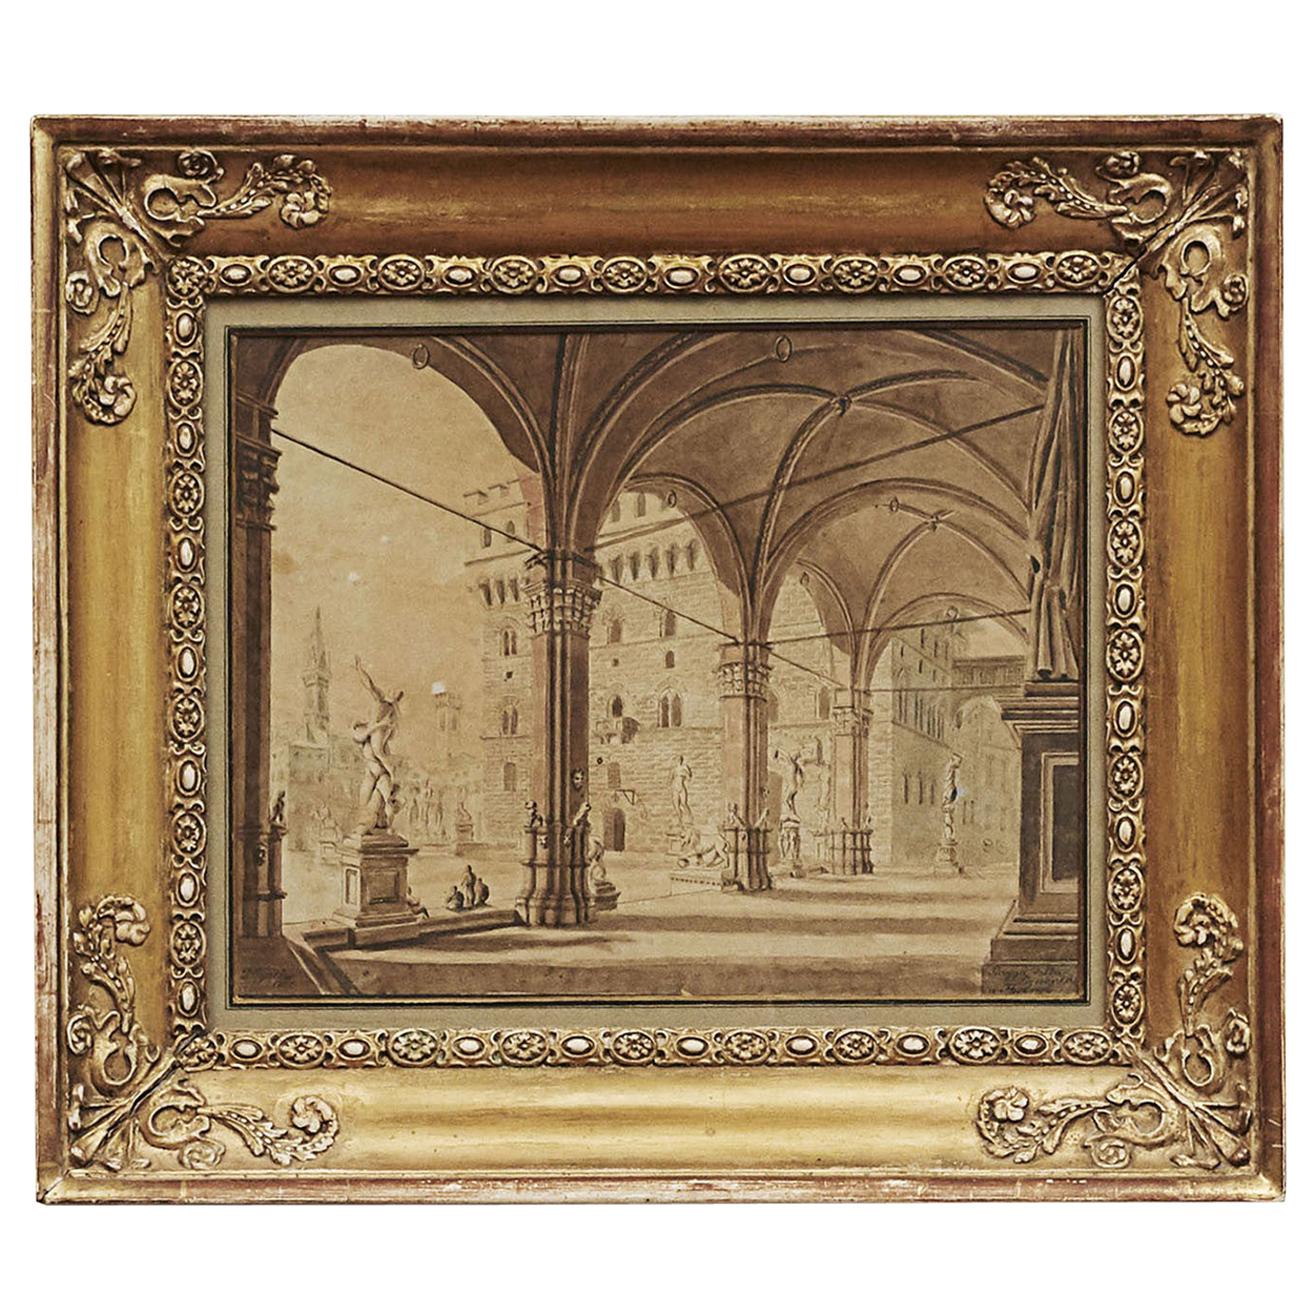 ""Palazzo della Signoria", Florenz. Signiert P. Gynther, 1822